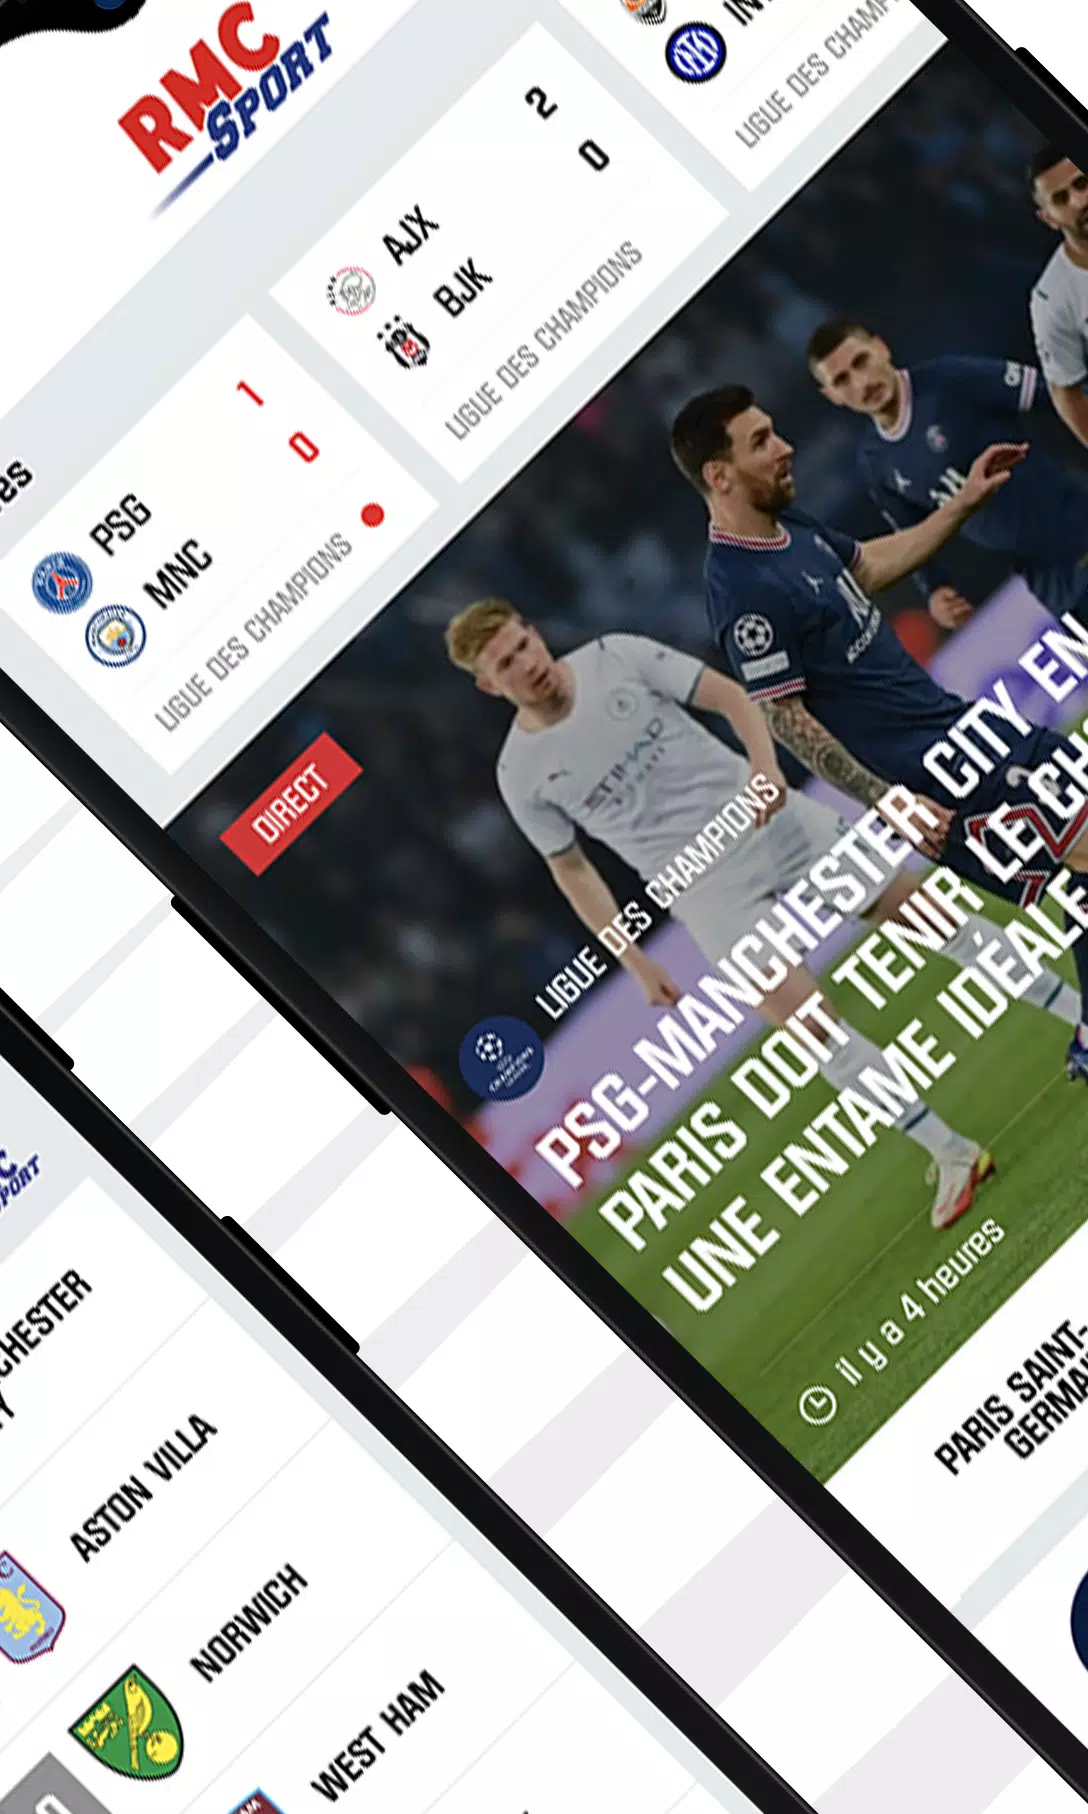 RMC Sport News, Résultats foot APK pour Android Télécharger